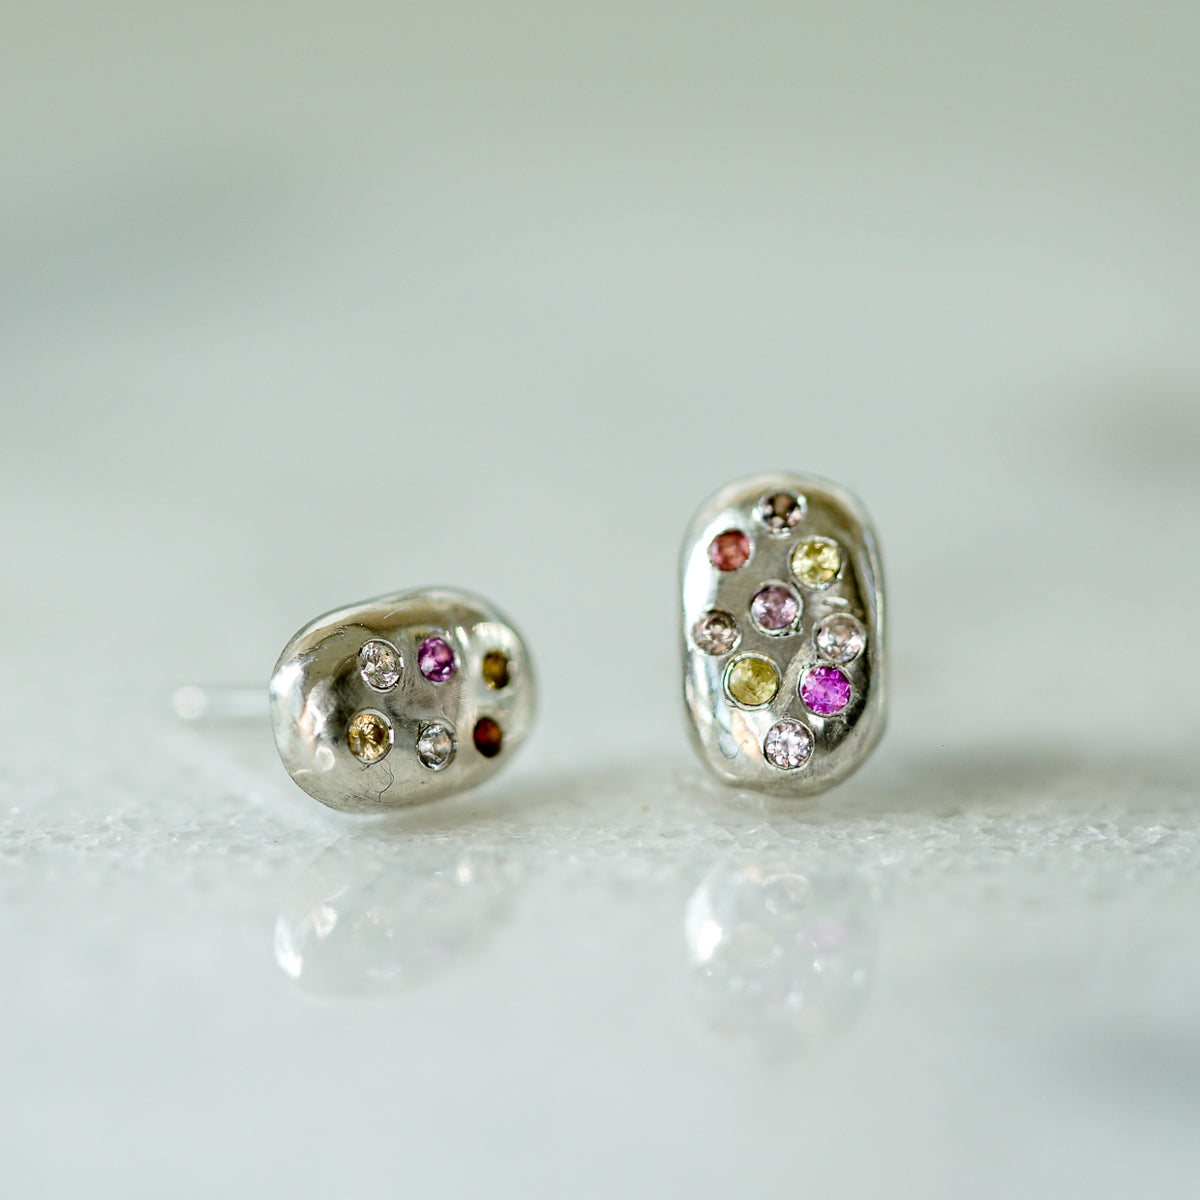 Starburst rain drop II earrings with sapphires